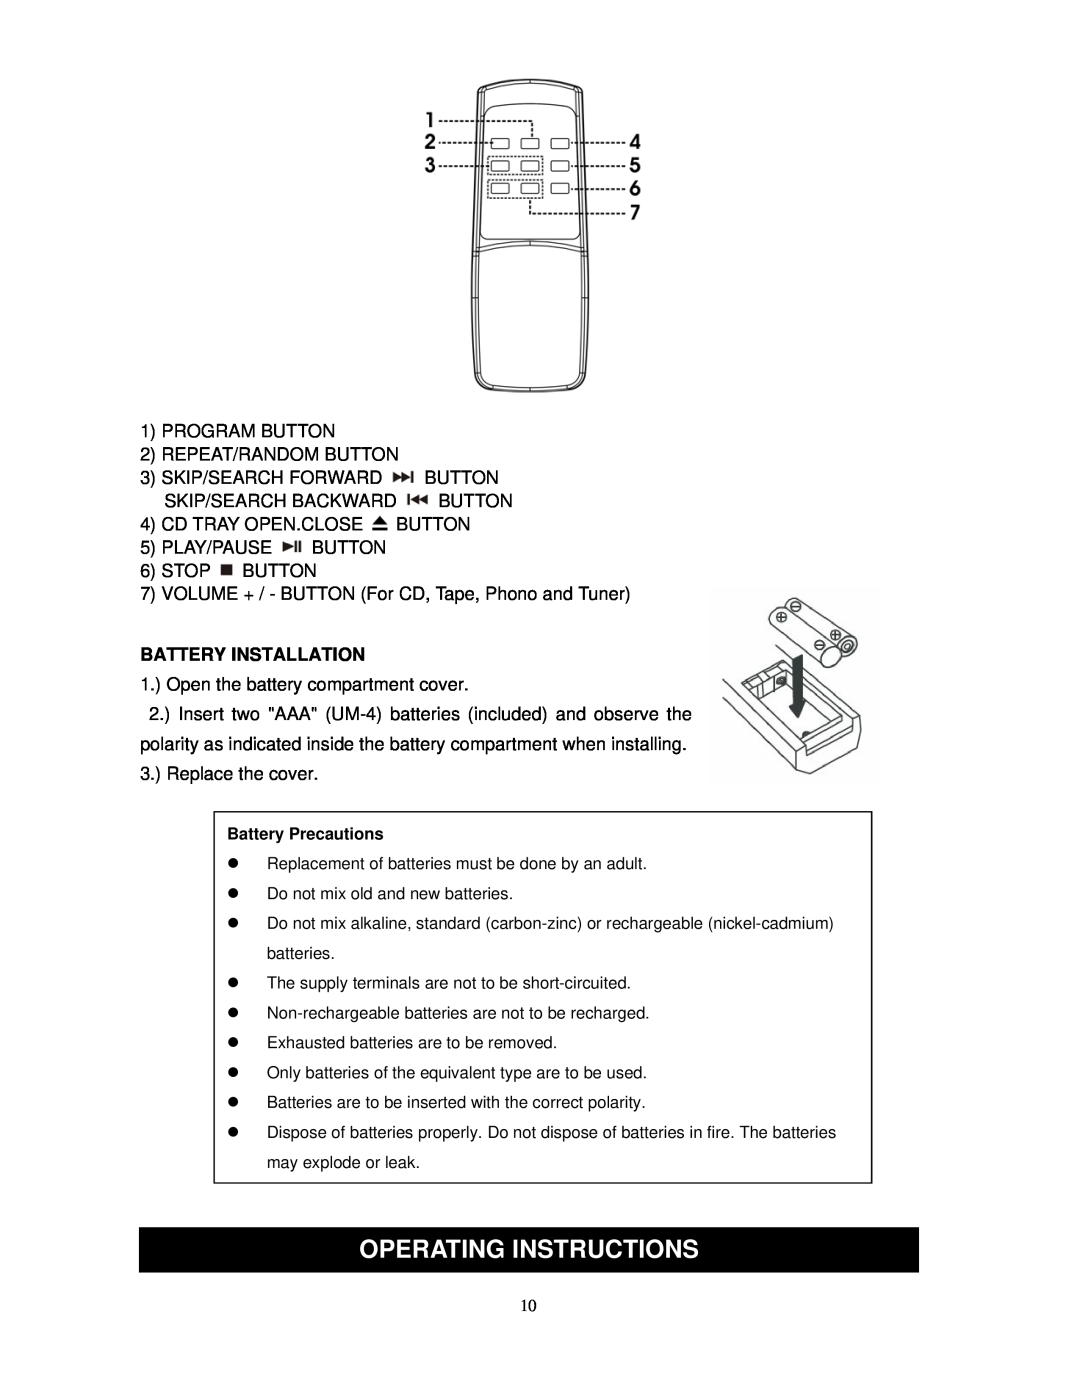 Jensen JTA-475 user manual Operating Instructions, Battery Installation 